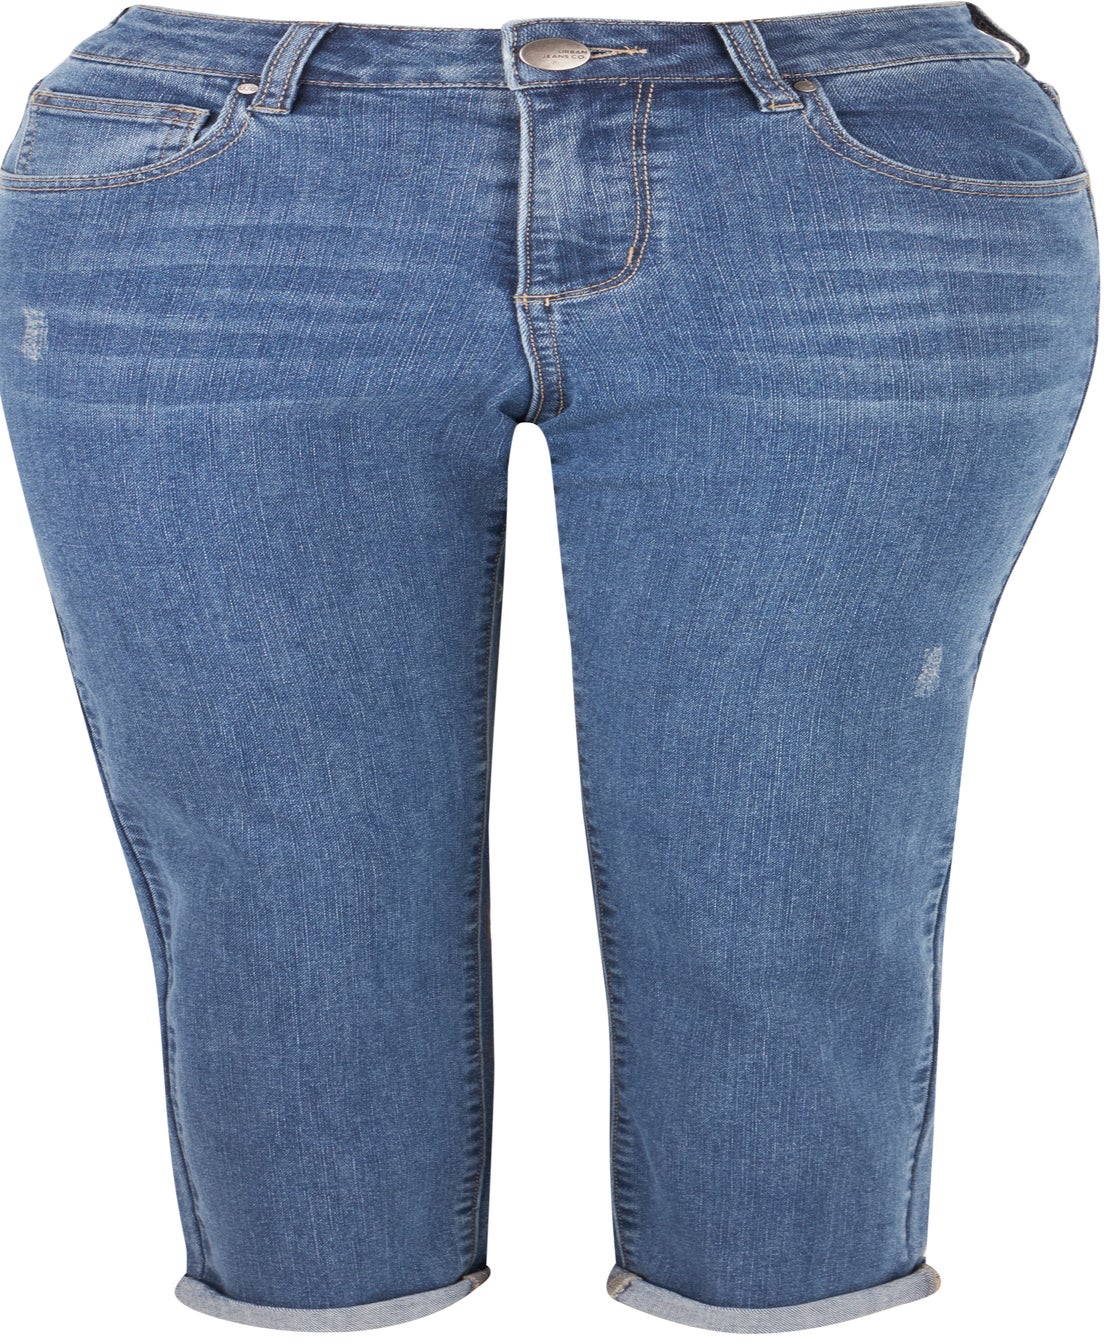 Women's Slim Leg Girlfriend Jeans - Postie